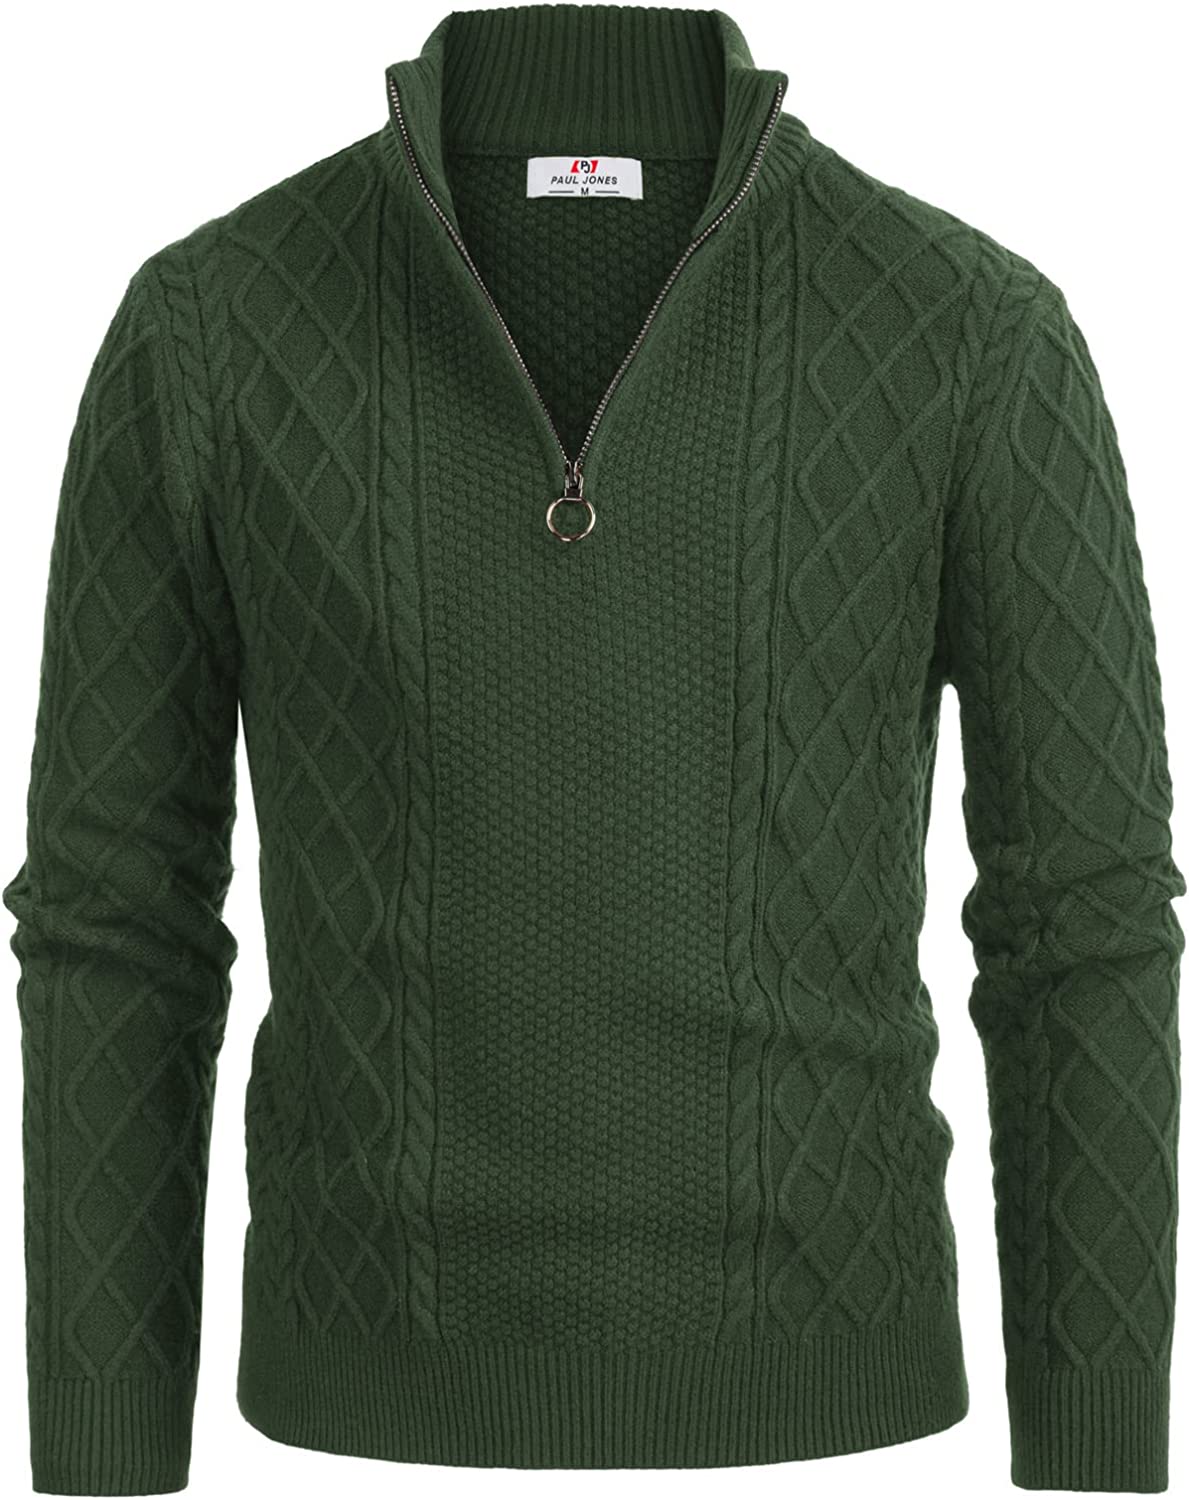 PJ Paul Jones Men's Casual Quarter-Zip Sweaters Cable Knit Thermal